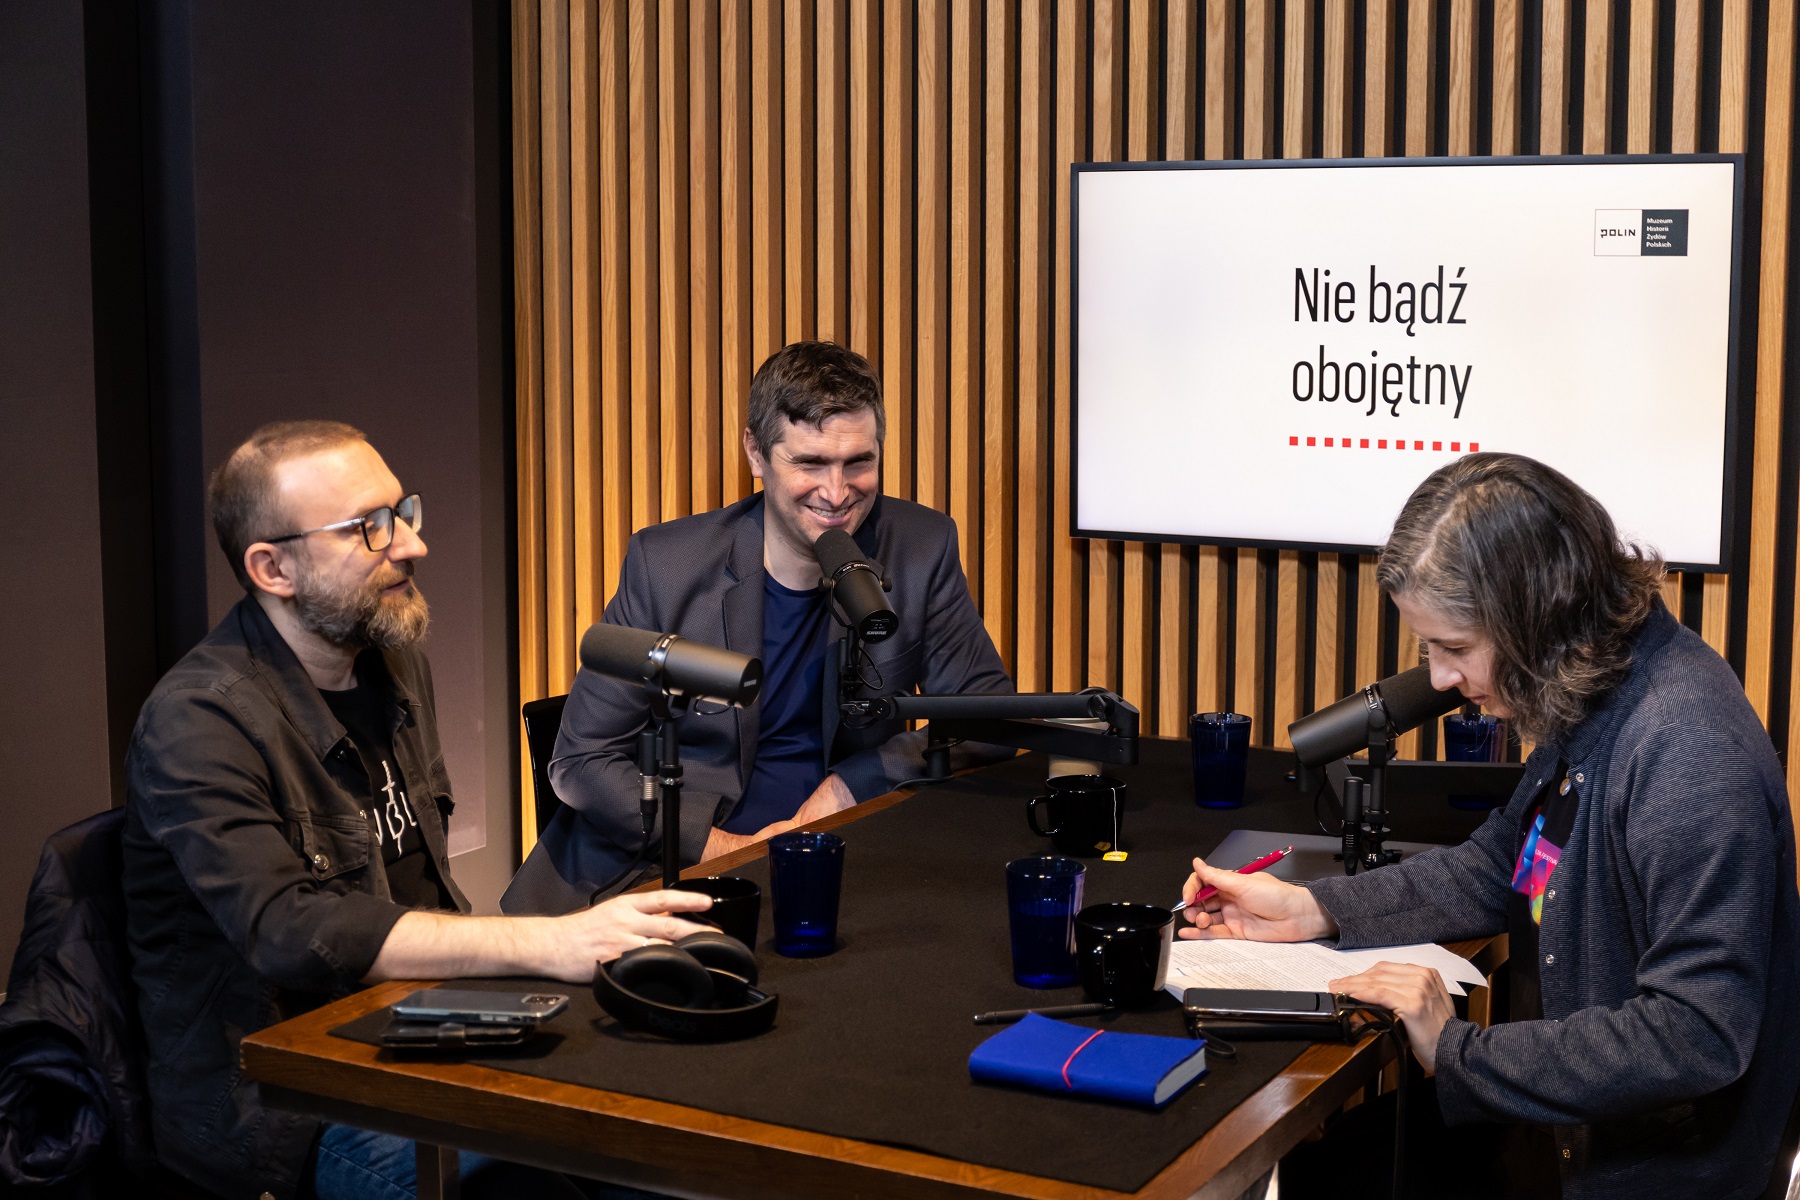 W studiu, podczas nagrania pierwszego odcinka podcastu siedzą przy stole: Karolina Wigura, Tomasz Stawiszyński i Piotr Stankiewicz. W tle na ekranie napis Nie bądź obojętny.